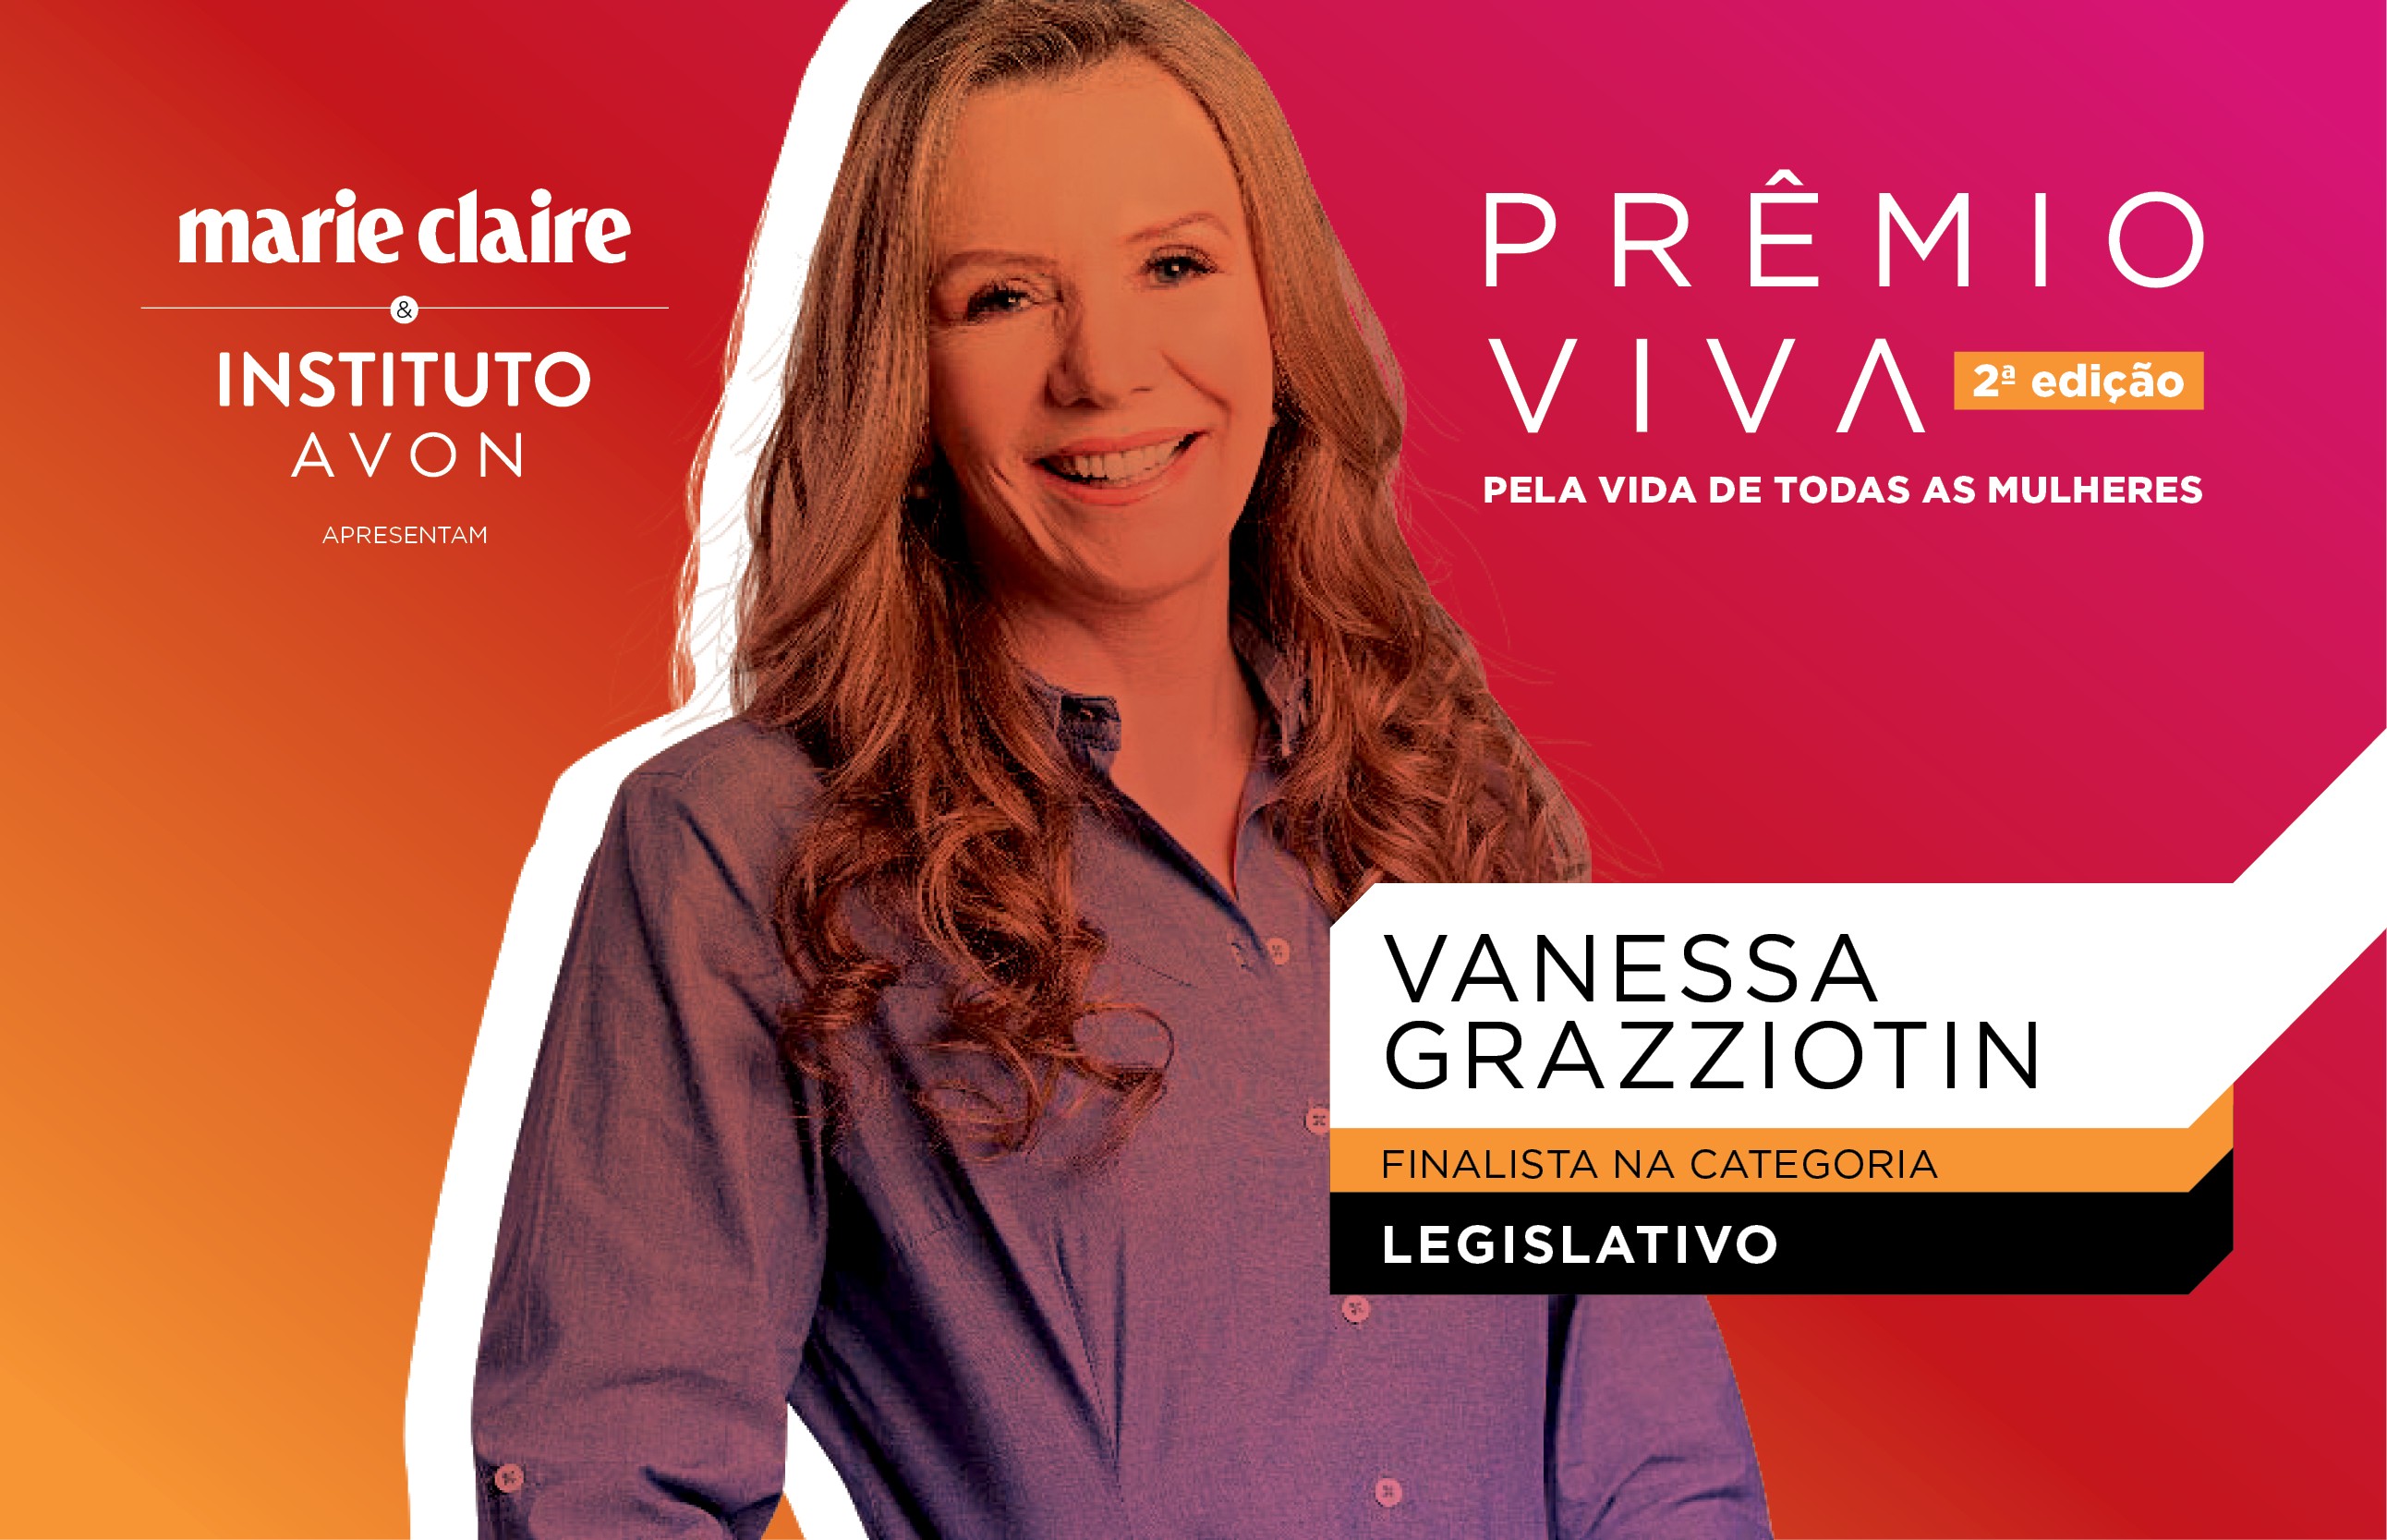 Vanessa Grazziotin, finalista do Pêmio Viva 2019 na categoria Legislativo (Foto: Marie Claire)